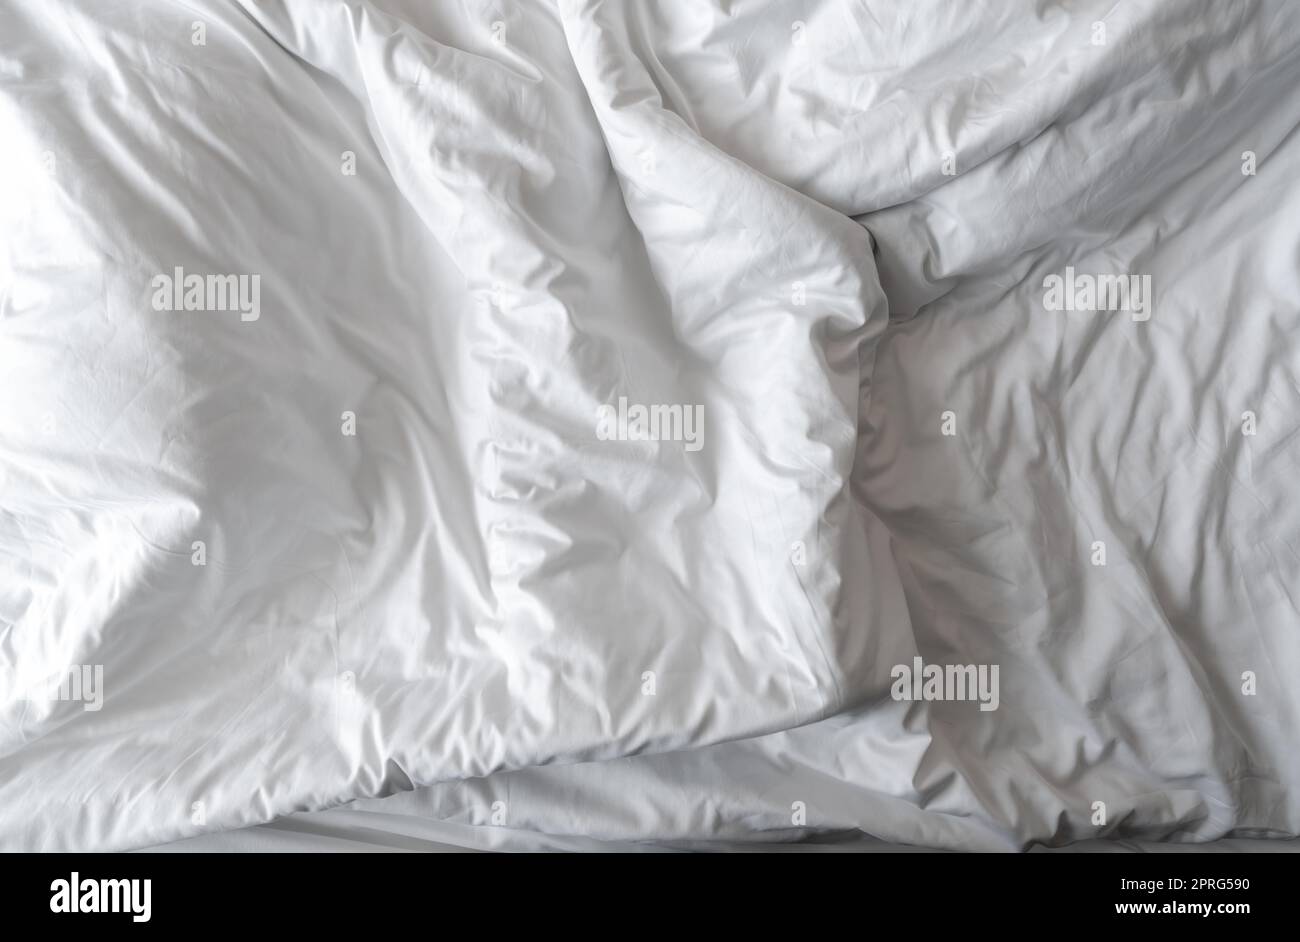 Weiße Leinendecke im Hotelzimmer. Nahaufnahme einer schmutzigen weißen Decke. Komfortables Bett mit weicher weißer Federdecke. Schlafen Sie gut mit hochwertigem Bettenhaushaltskonzept. Zerknitterte weiße Decke. Stockfoto